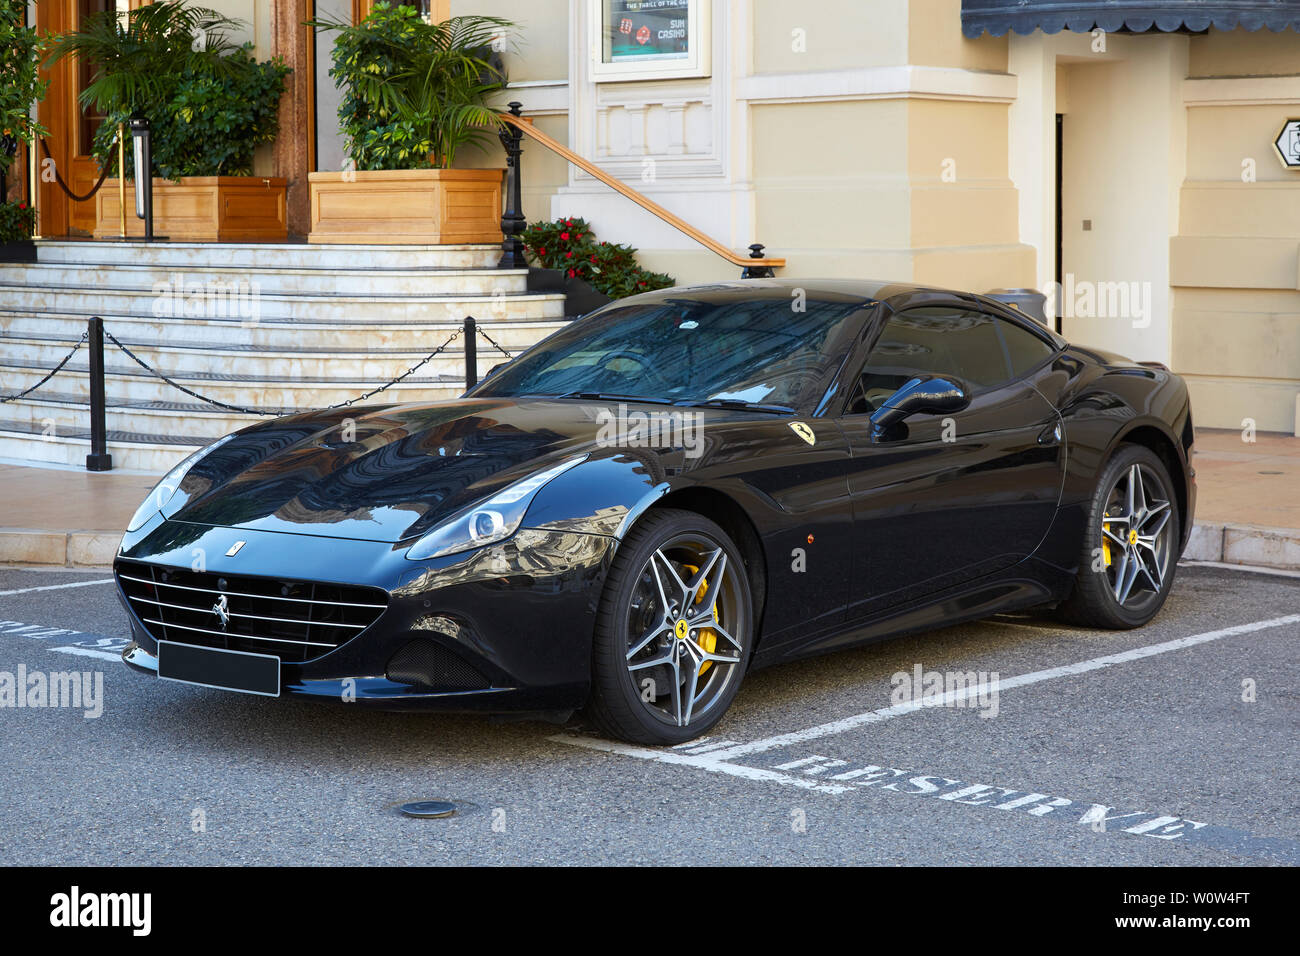 MONTE CARLO, MONACO - AUGUST 21, 2016: Ferrari California black luxury car in a summer day in Monte Carlo, Monaco. Stock Photo